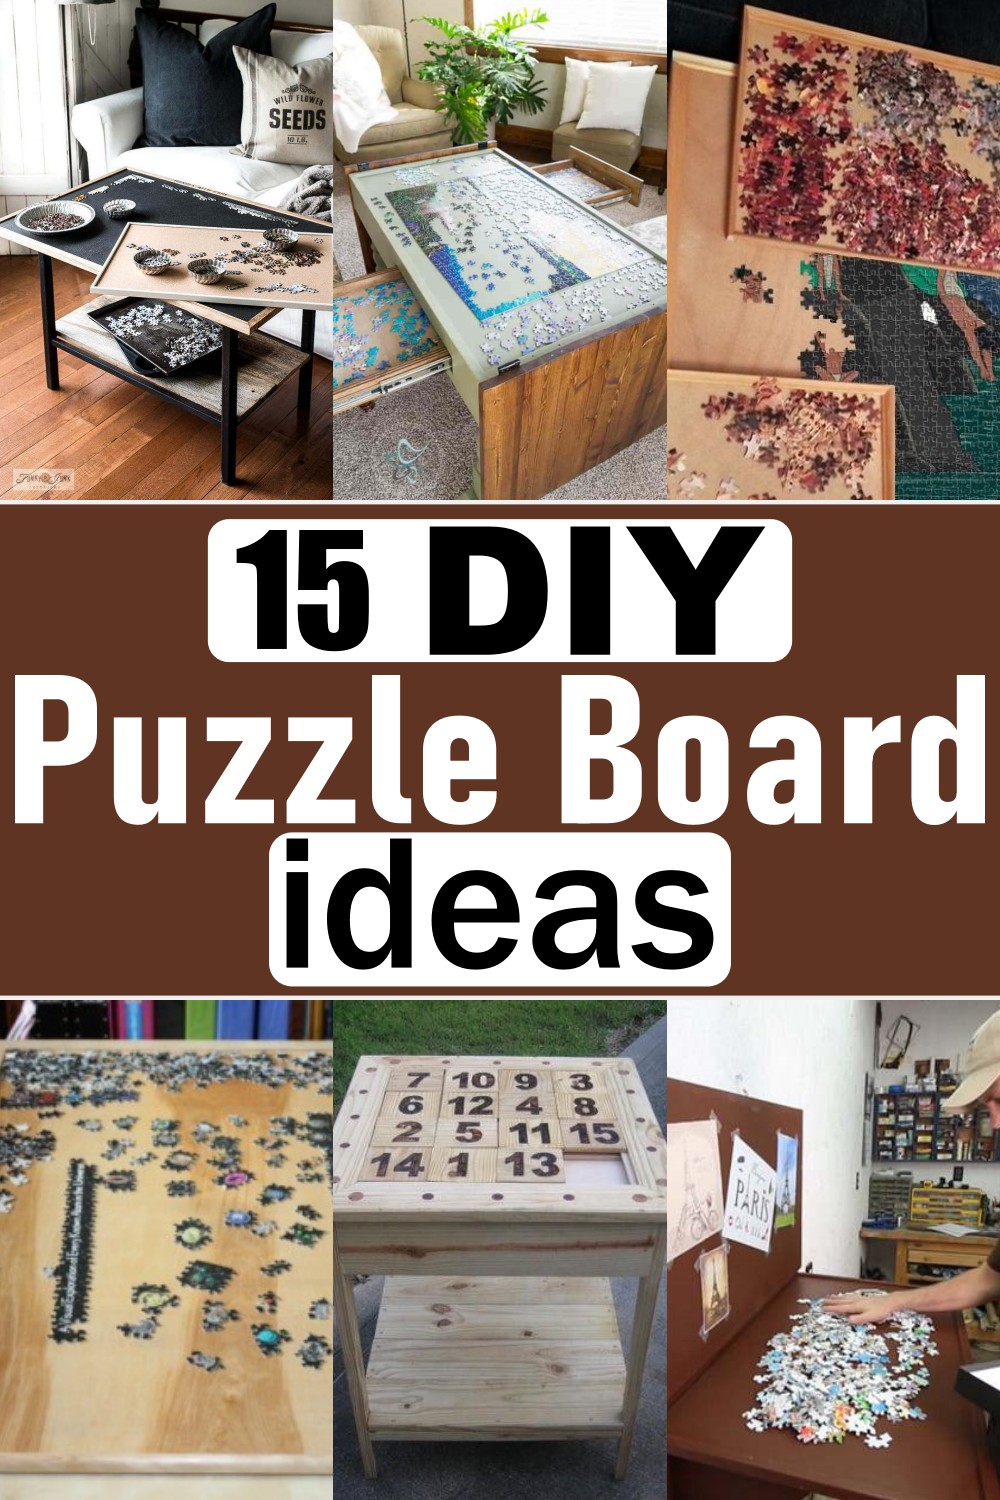 15 DIY Puzzle Board Ideas